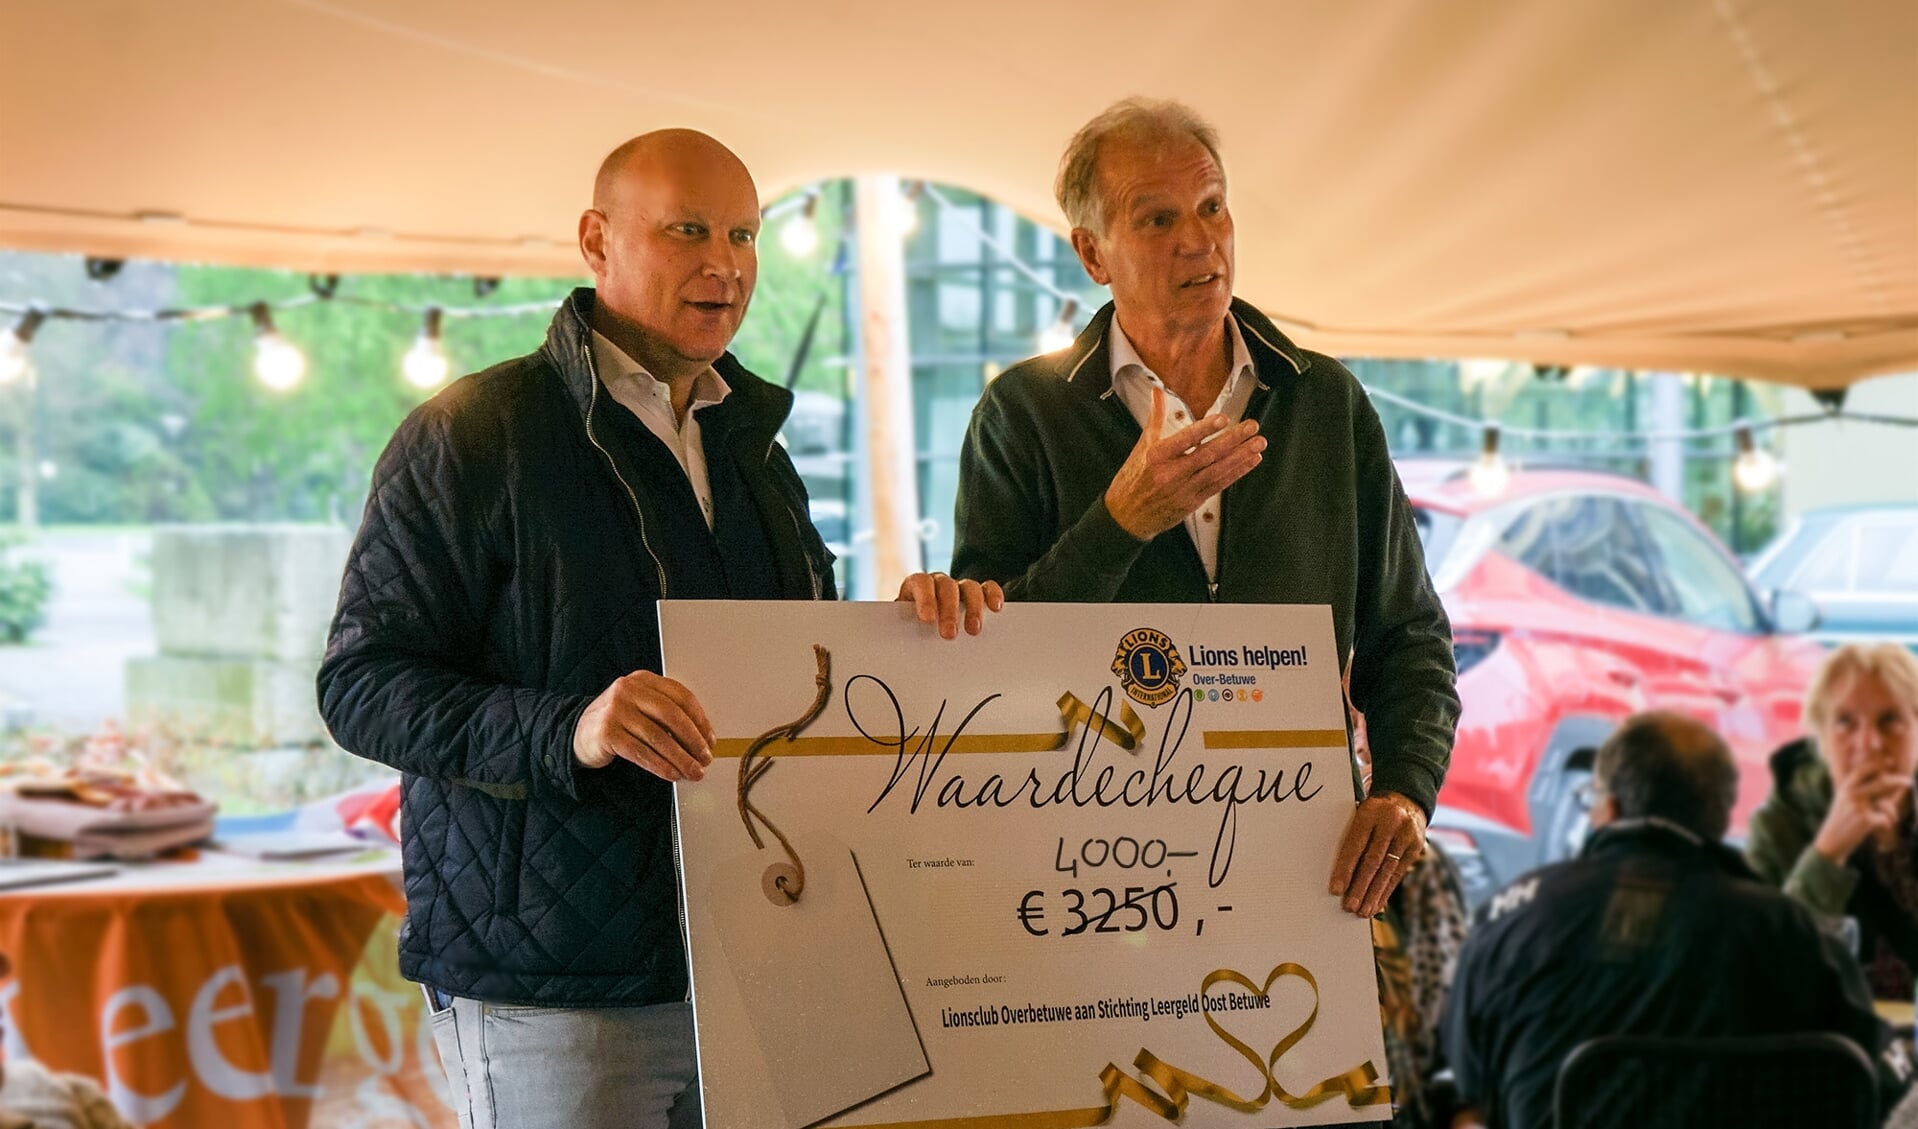 Cor Hendriks neemt cheque in ontvangst uitgereikt door Jan-Jaap Zollinger namens de Lions rally organisatie.